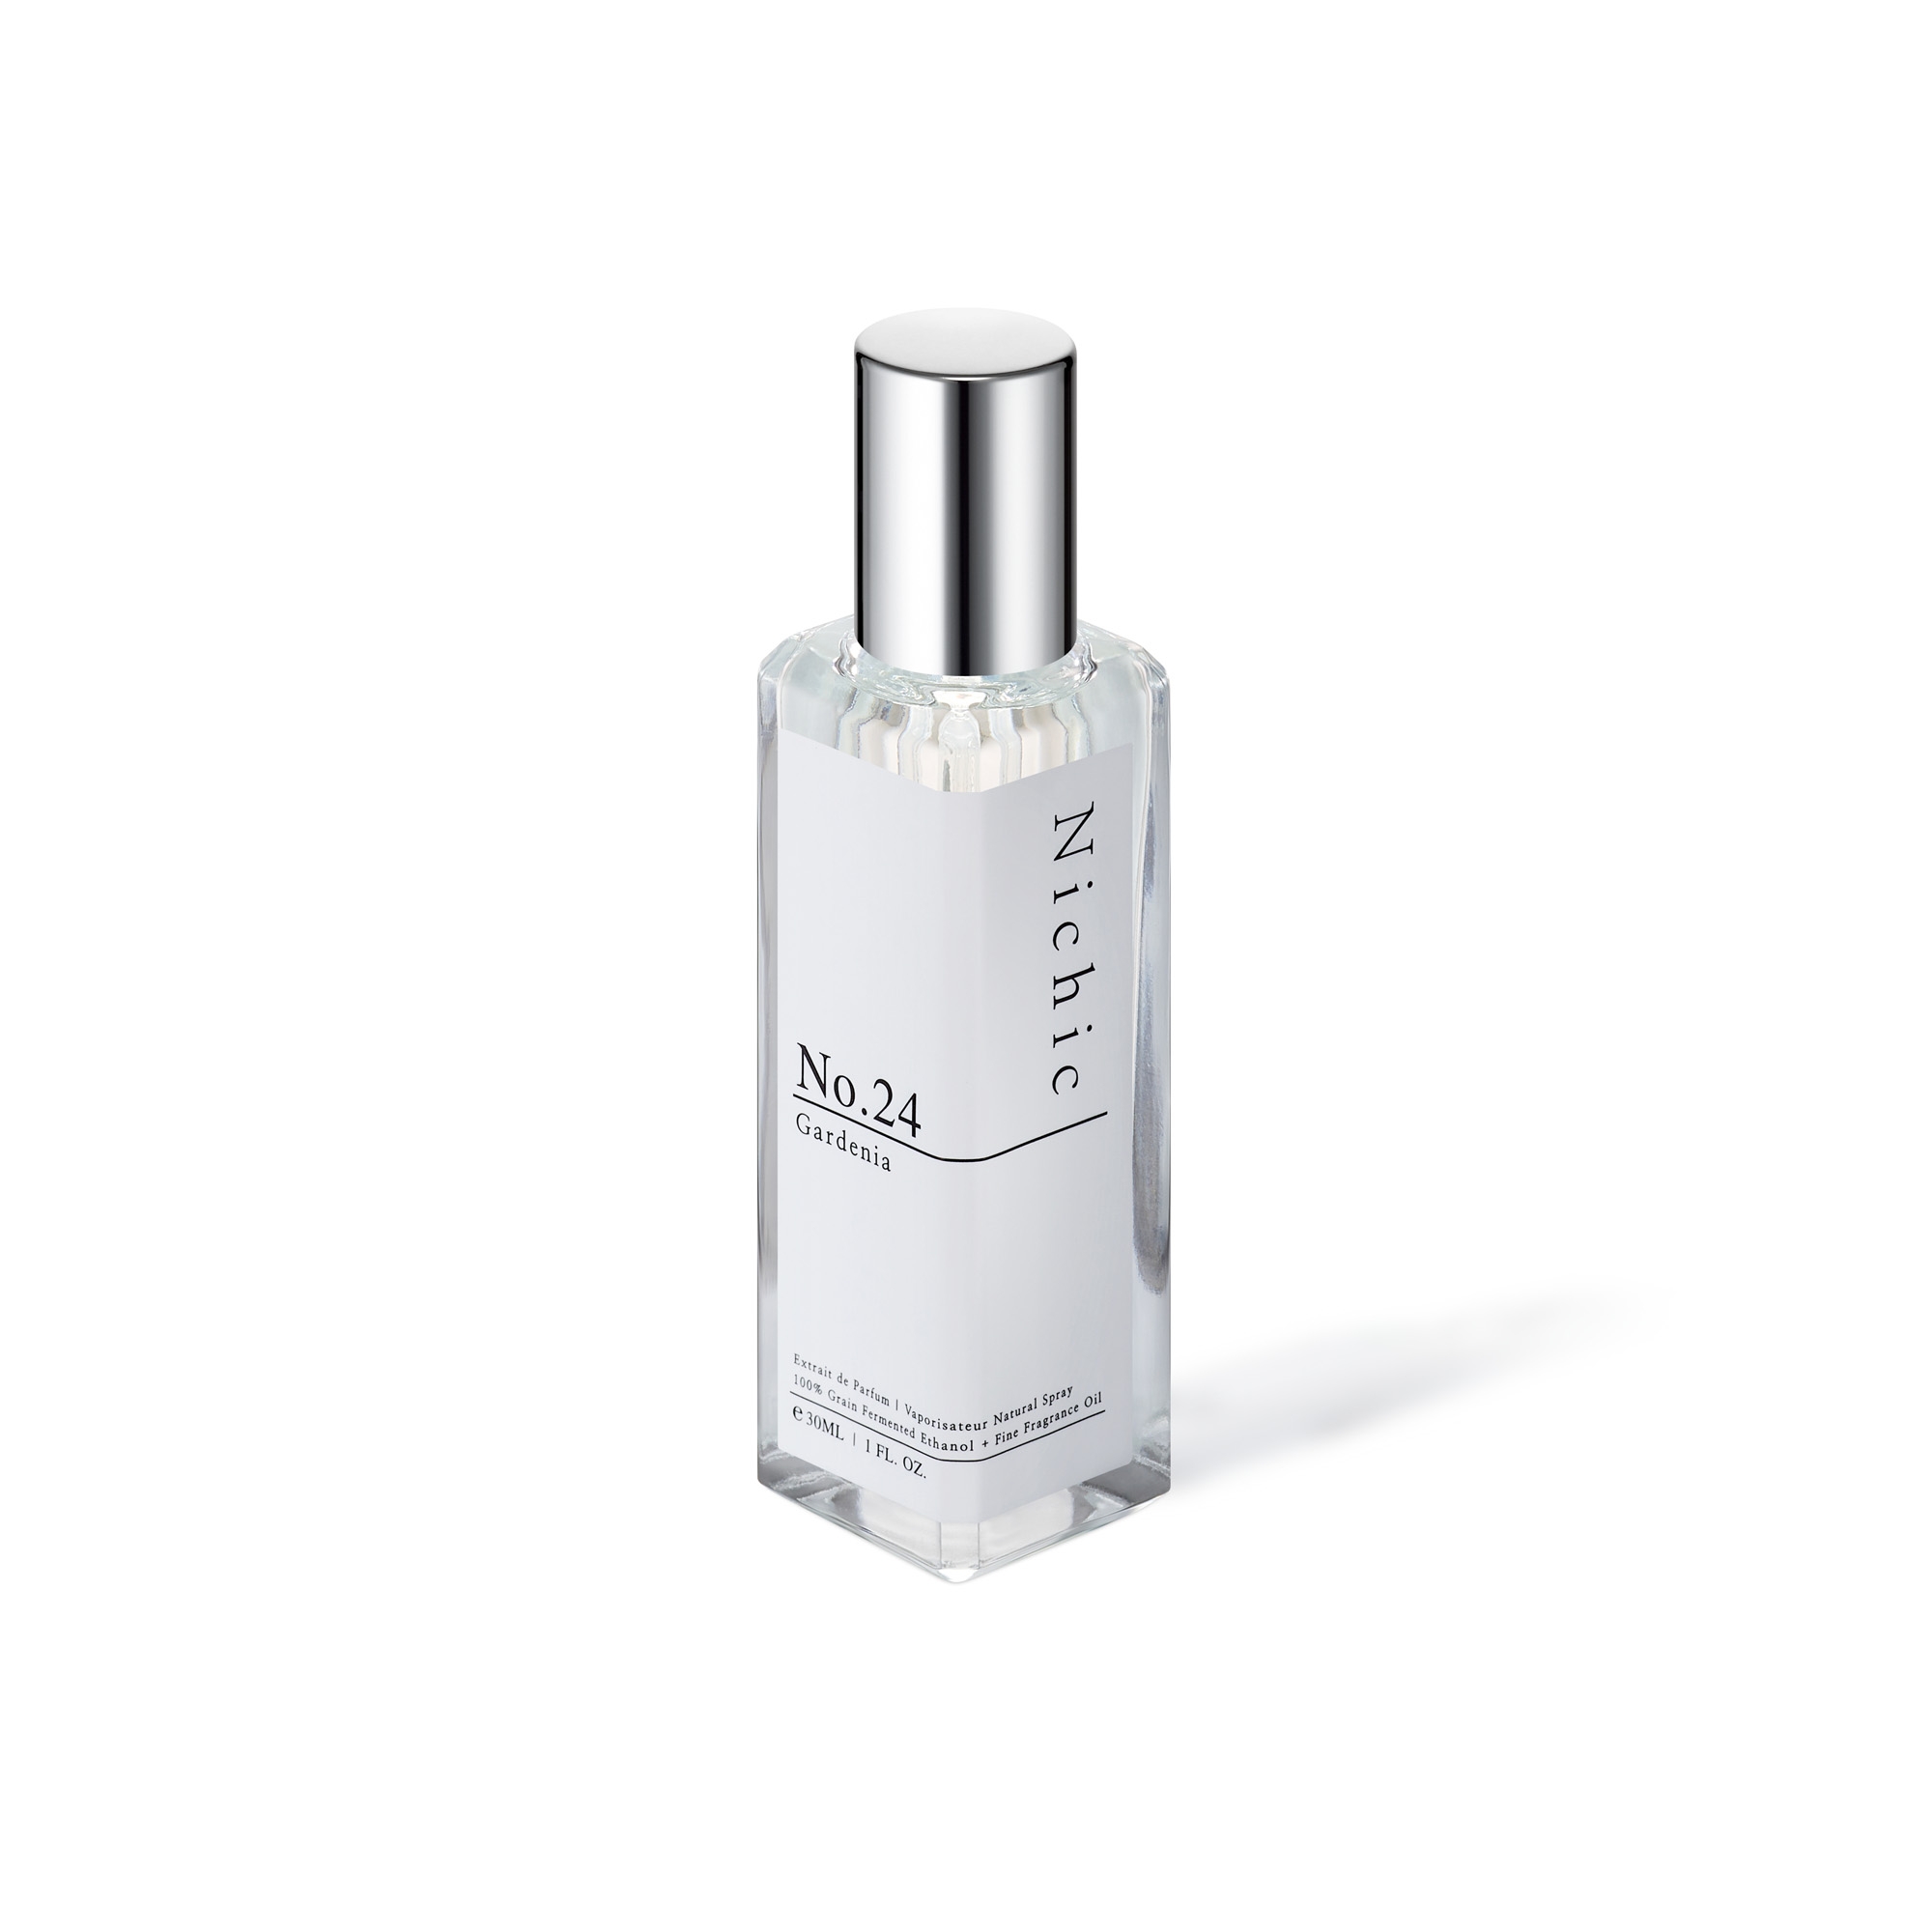 Nichic(ニチック)Extrait de Parfum【No.24】Gardenia - 30mL